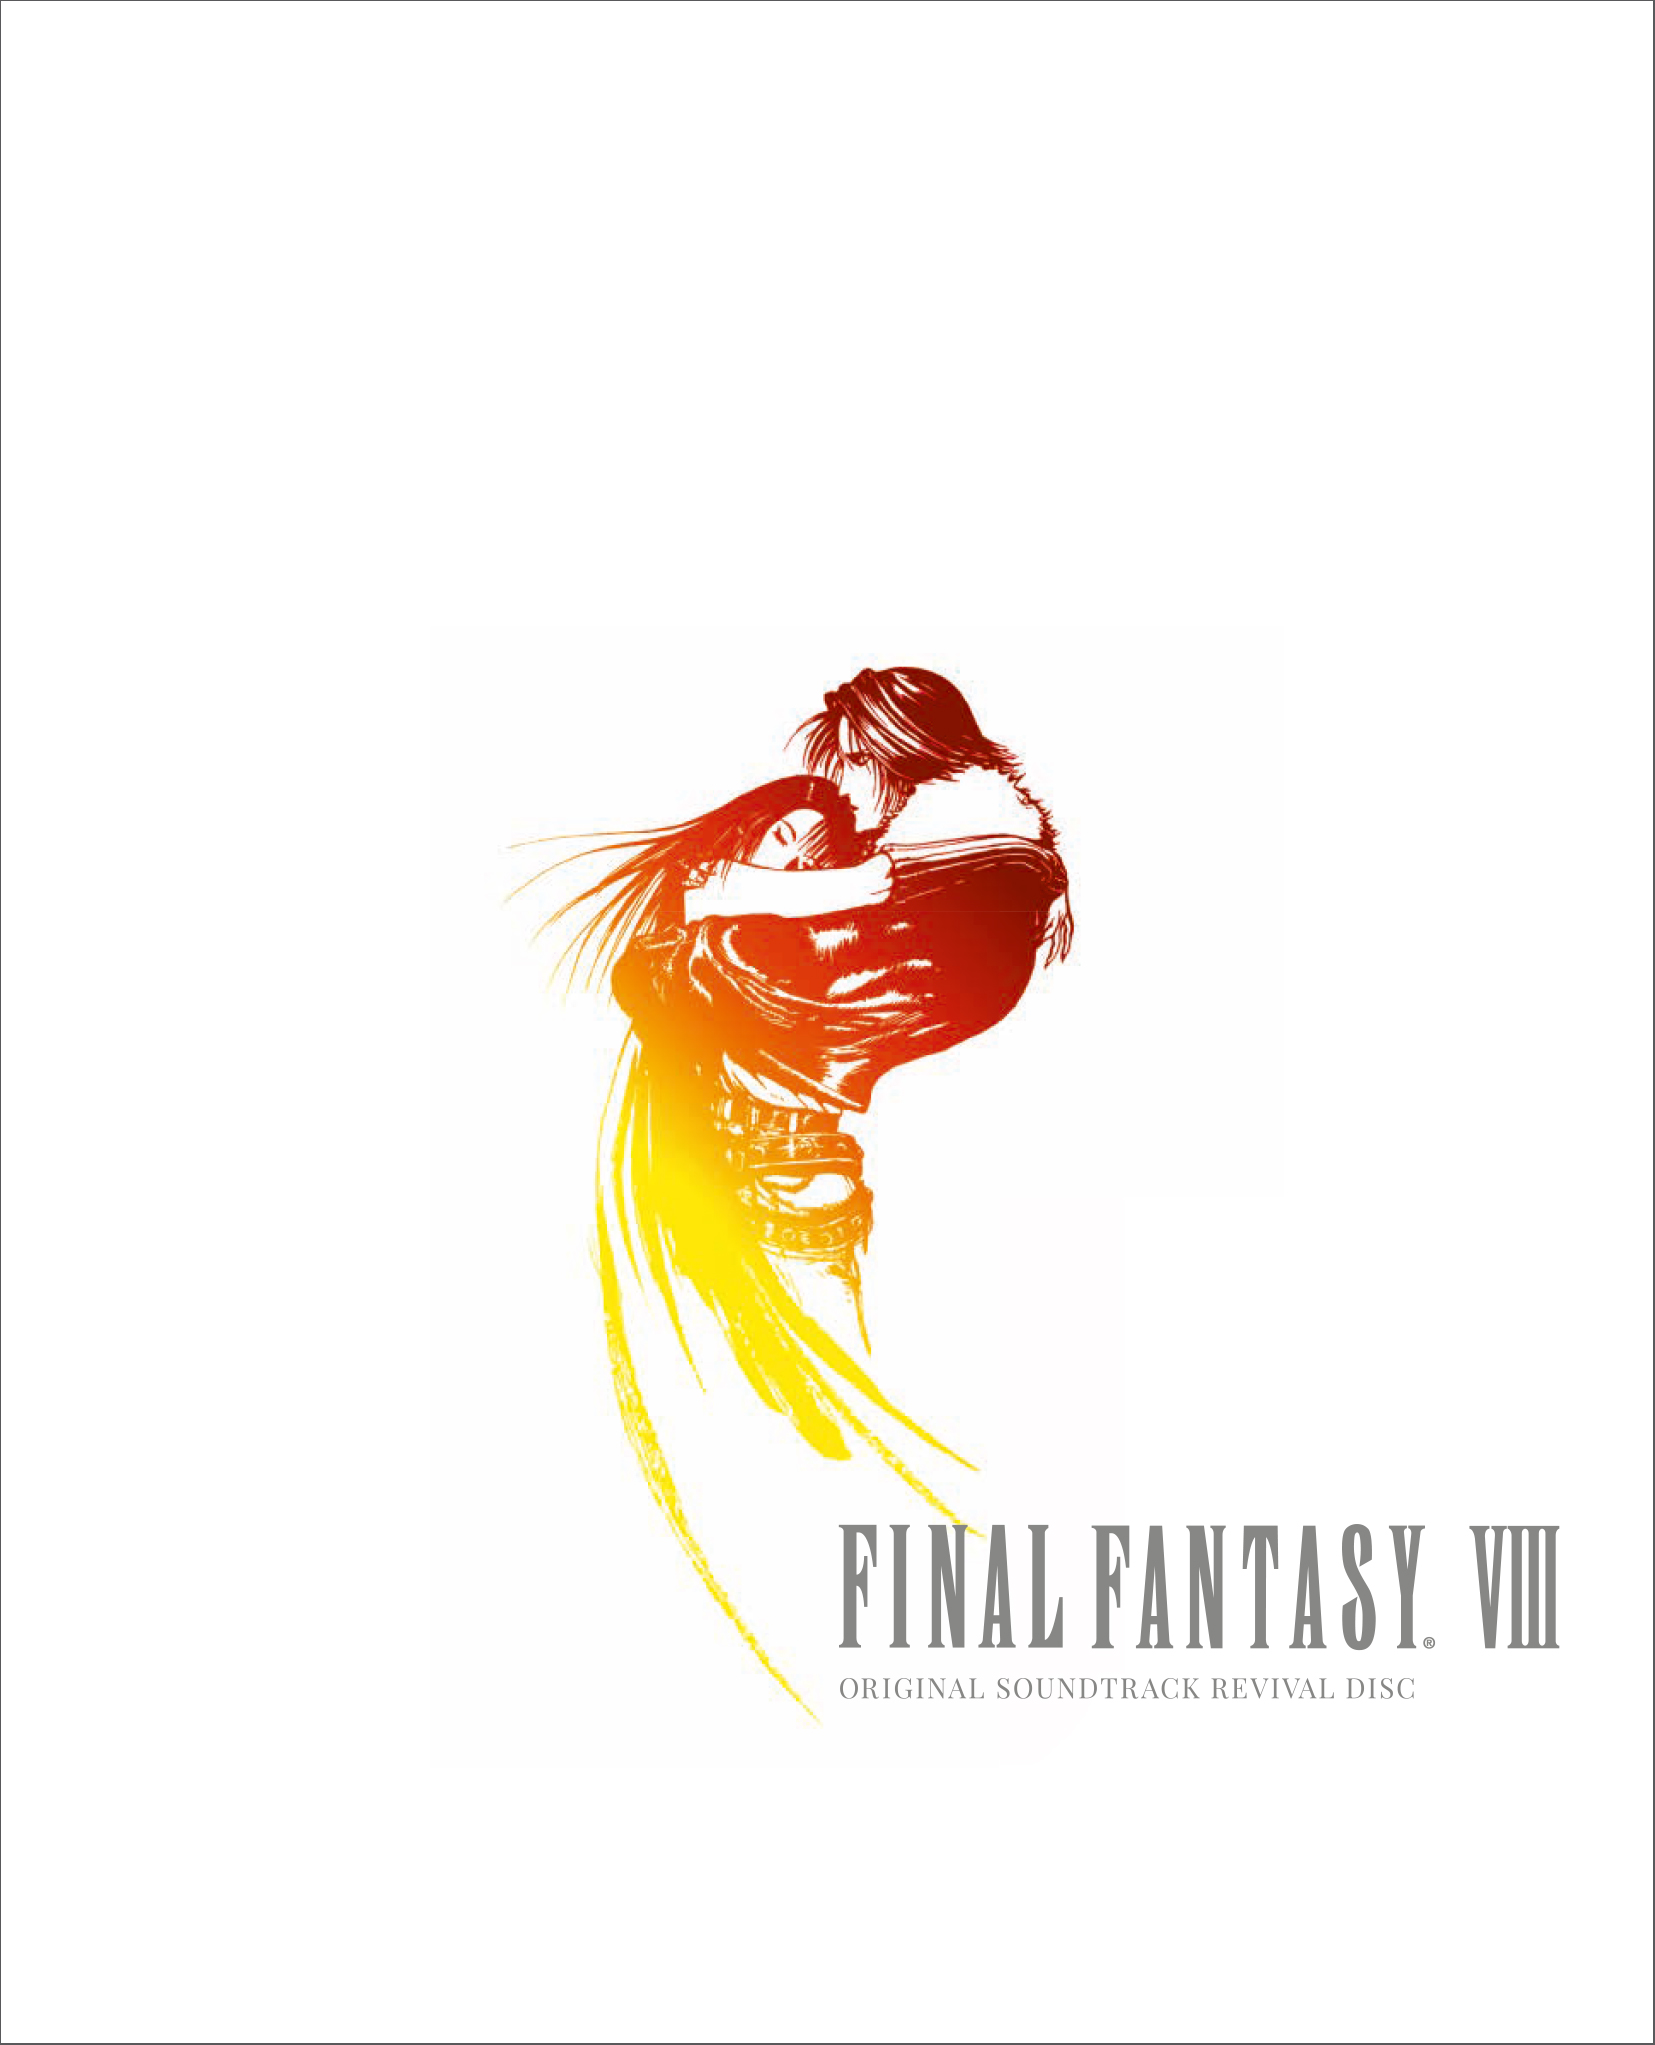 ゲームプレイ時のあの感動が再びーー Final Fantasy Viii Original Soundtrack Revival Disc 本日発売のお知らせ ニュース ファイナルファンタジーポータルサイト Square Enix